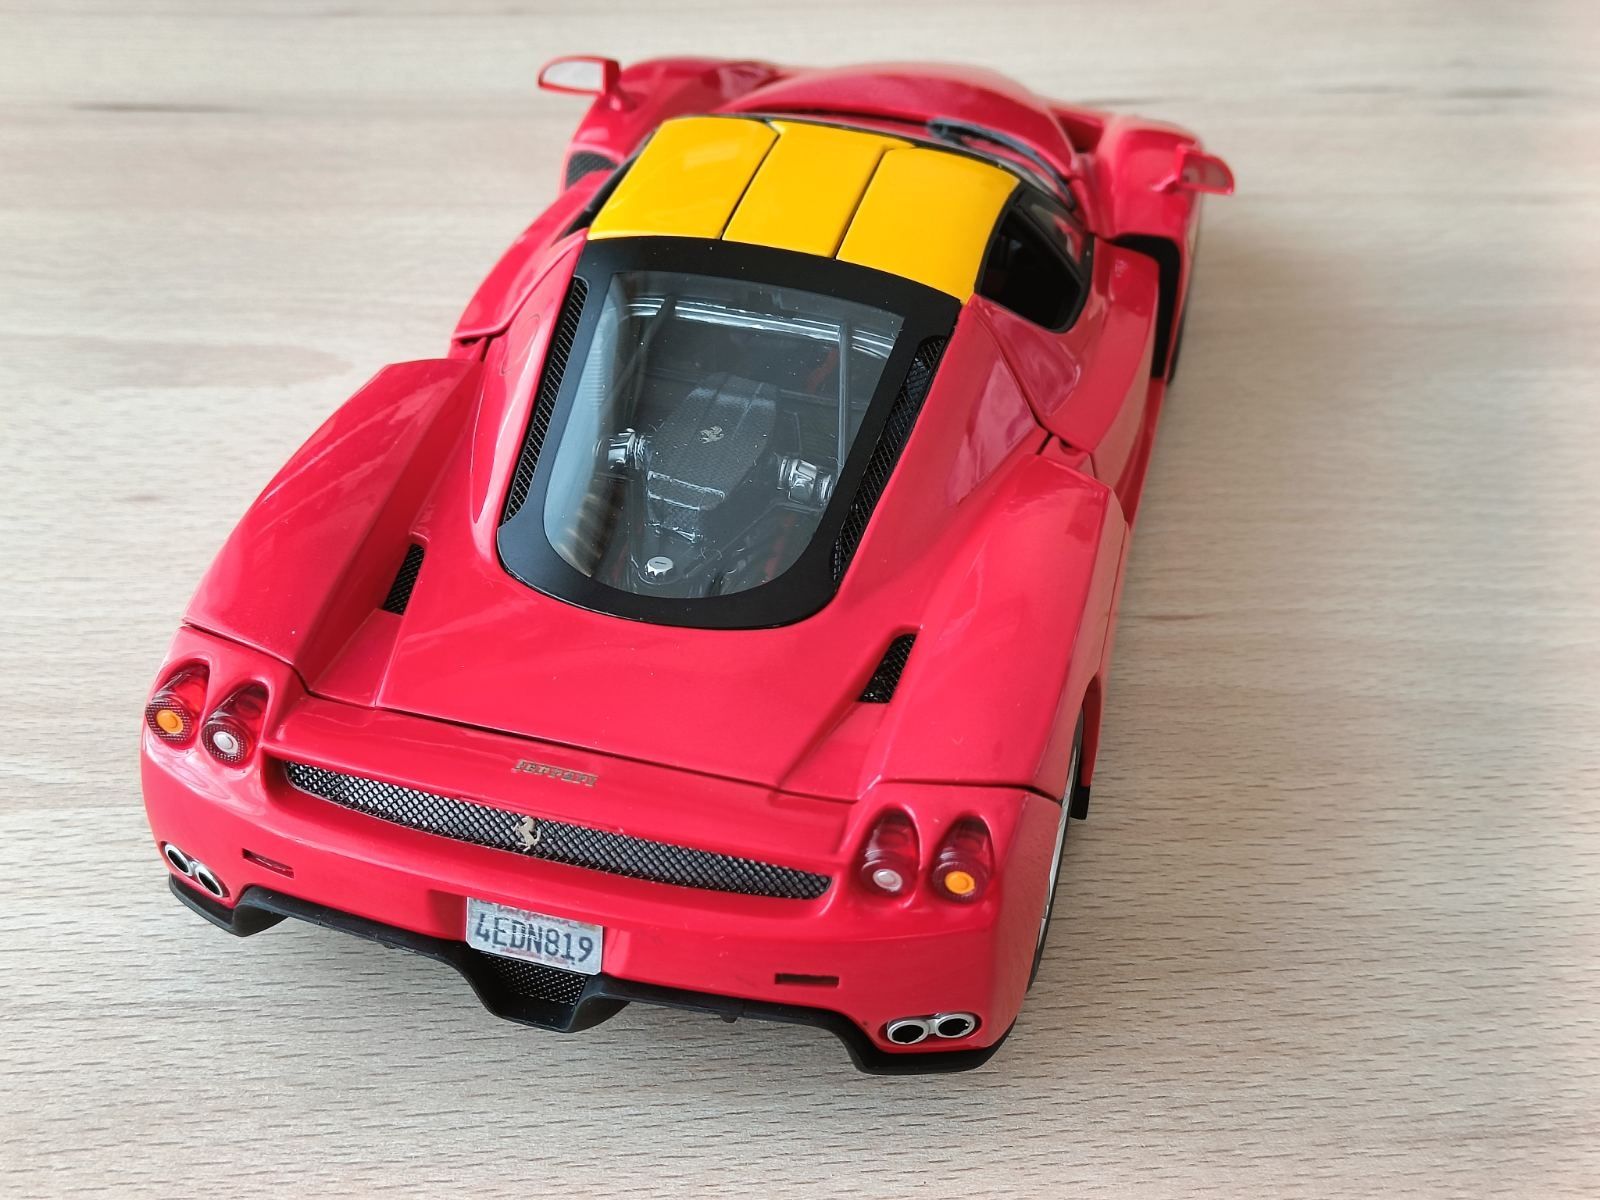 Ferrari Enzo, Hotwheels Elite 1:18